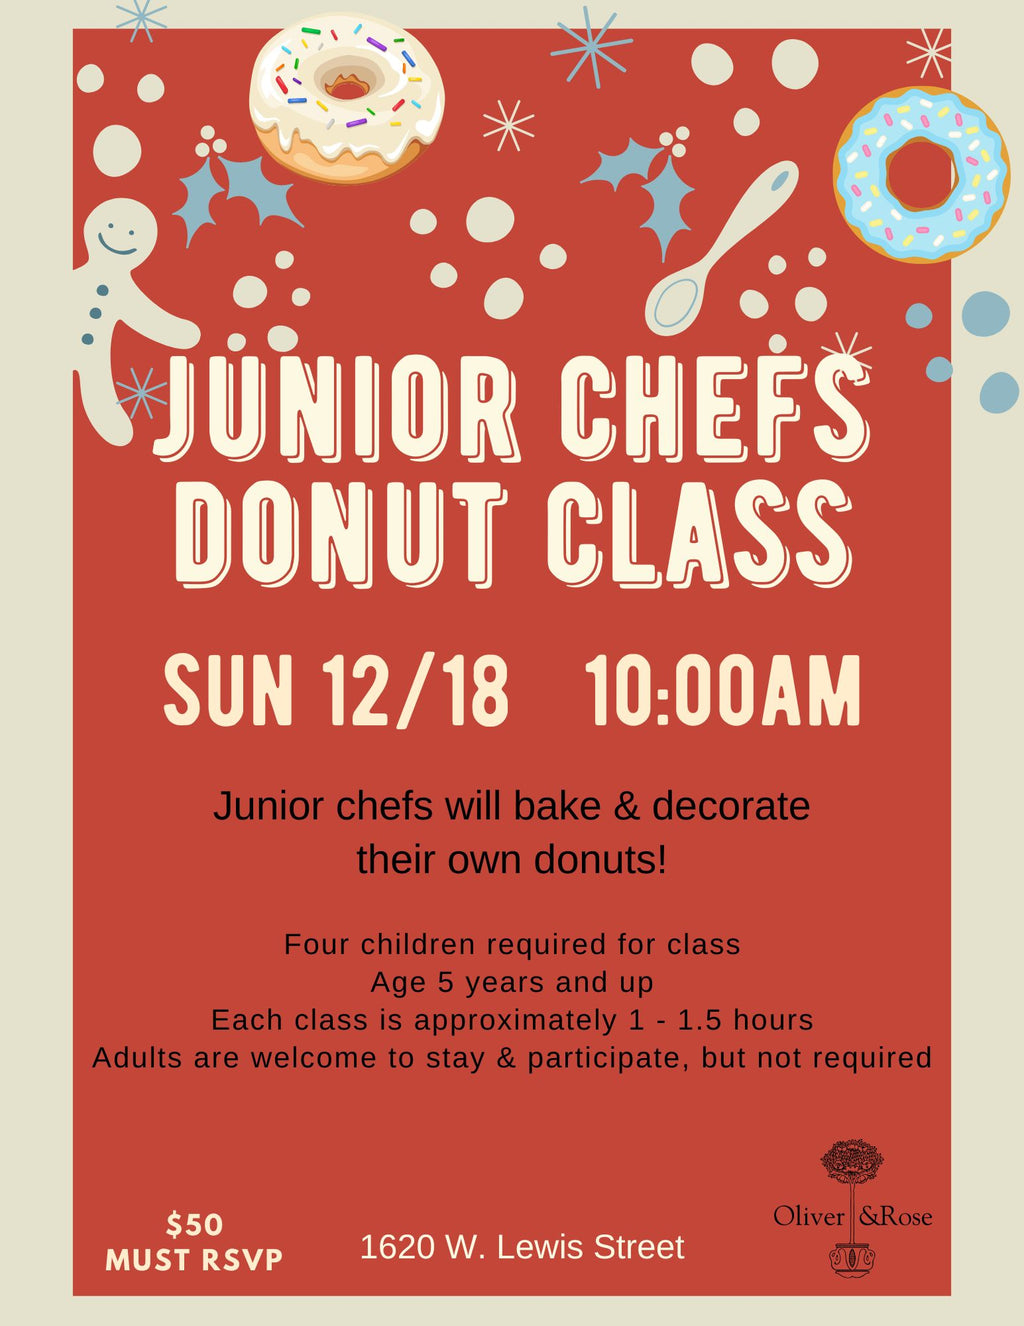 Jr. Chefs Donut Class